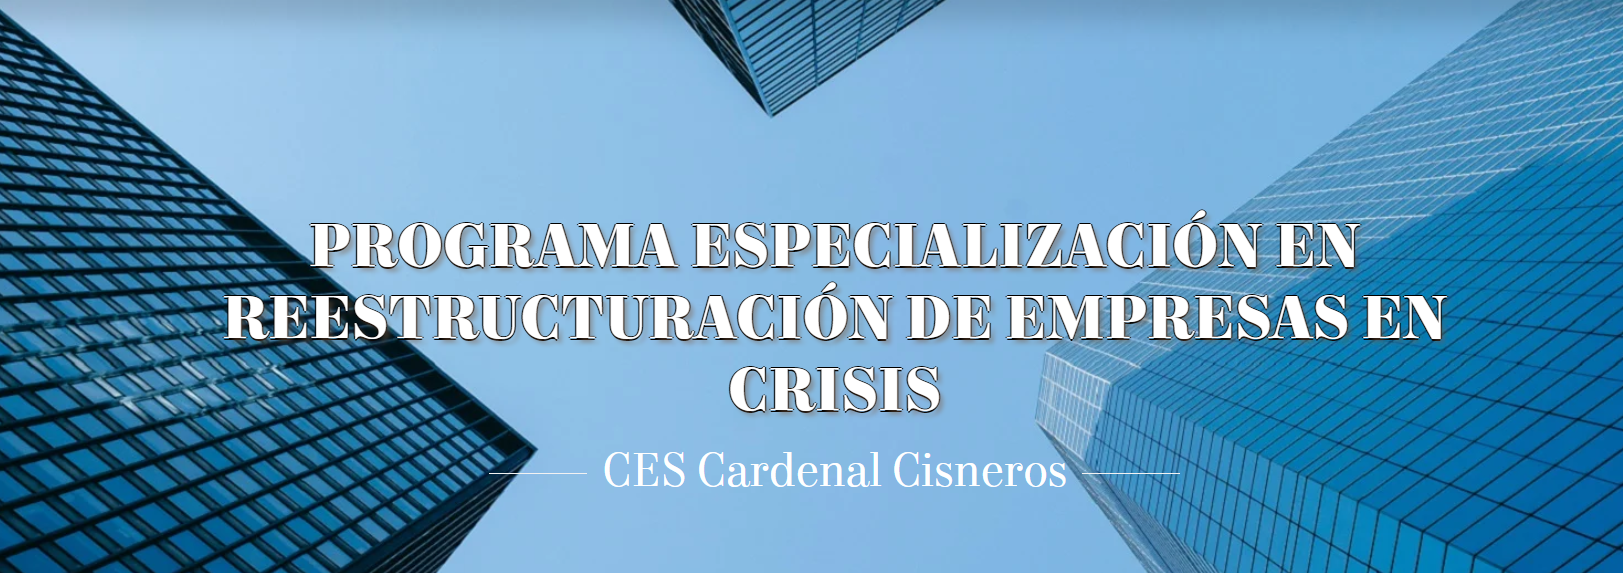 Descuento especial para colegiados/as en el Programa especialización en Reestructuración de empresas en crisis del CES Cardenal Cisneros